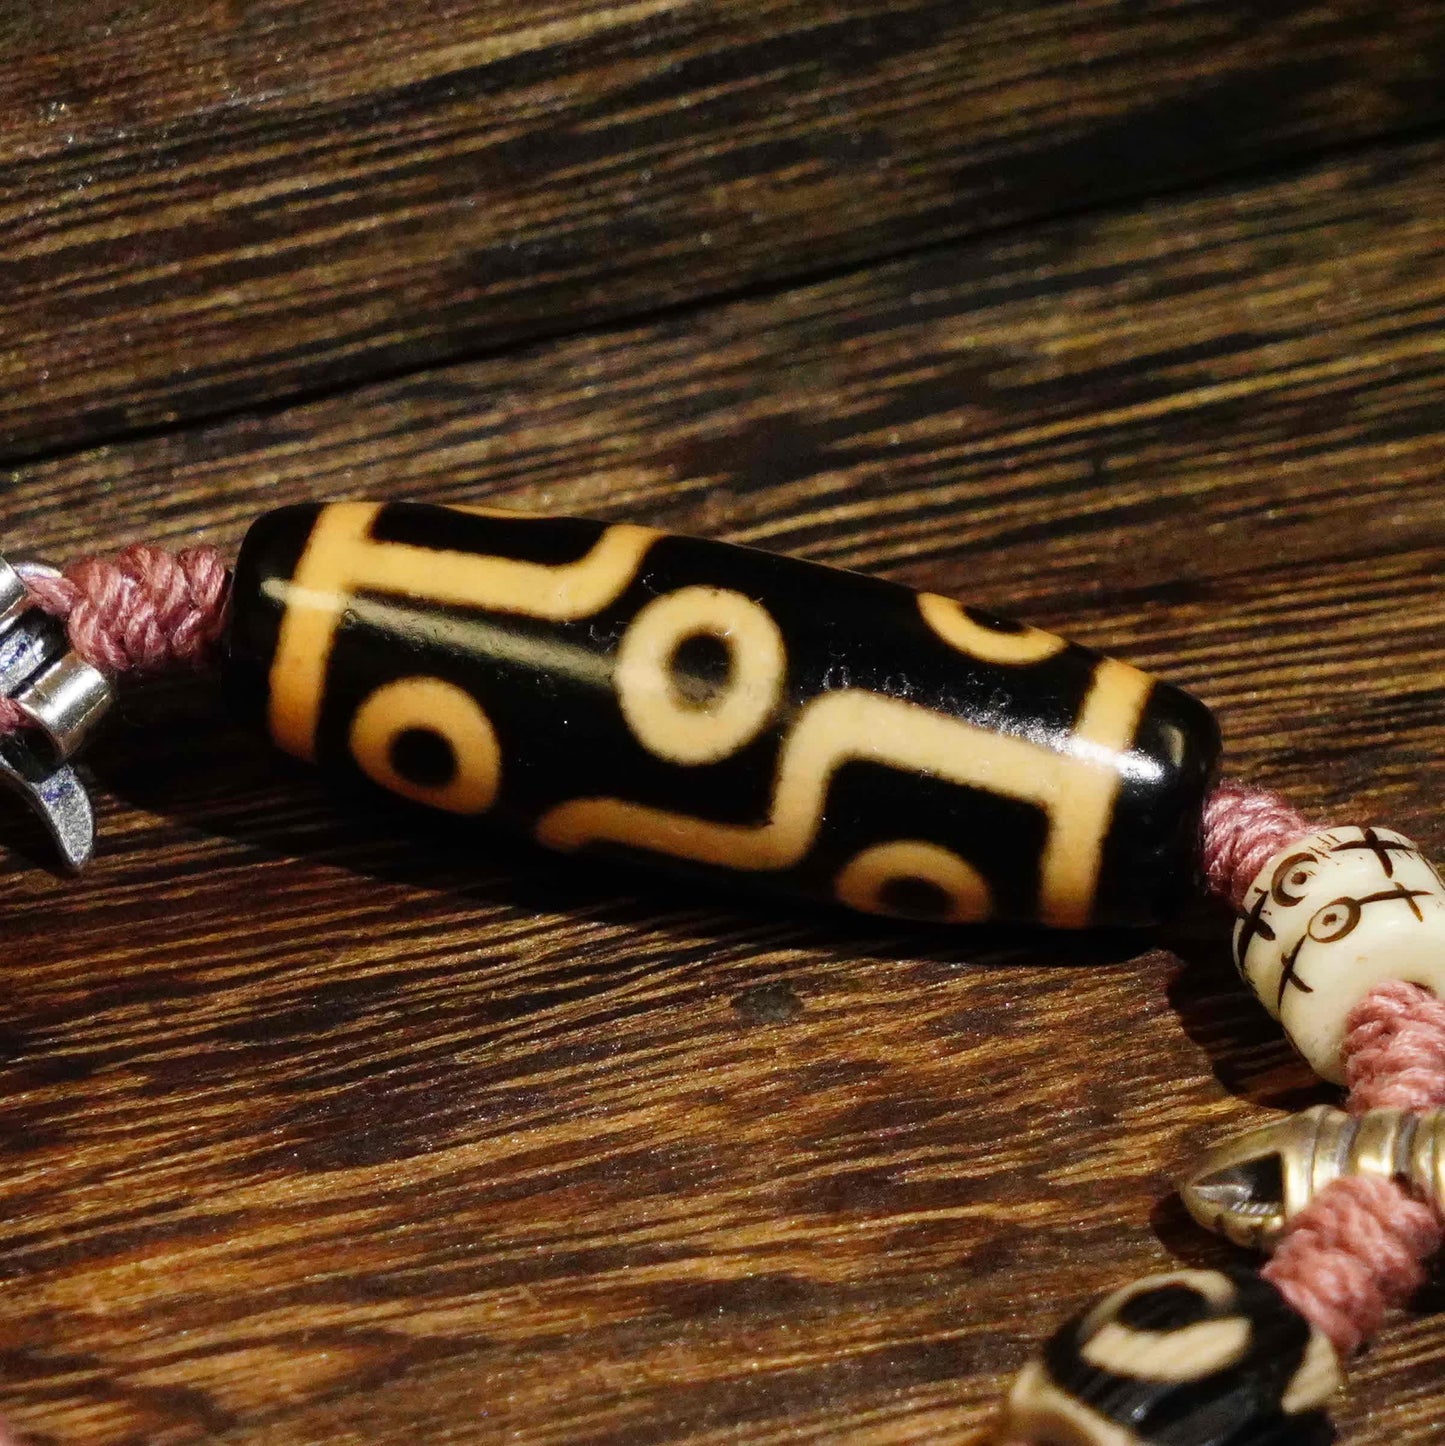 Nine Eyes Dzi Beads - Tibetan Millennium Dzi Beads - Handmade Rope